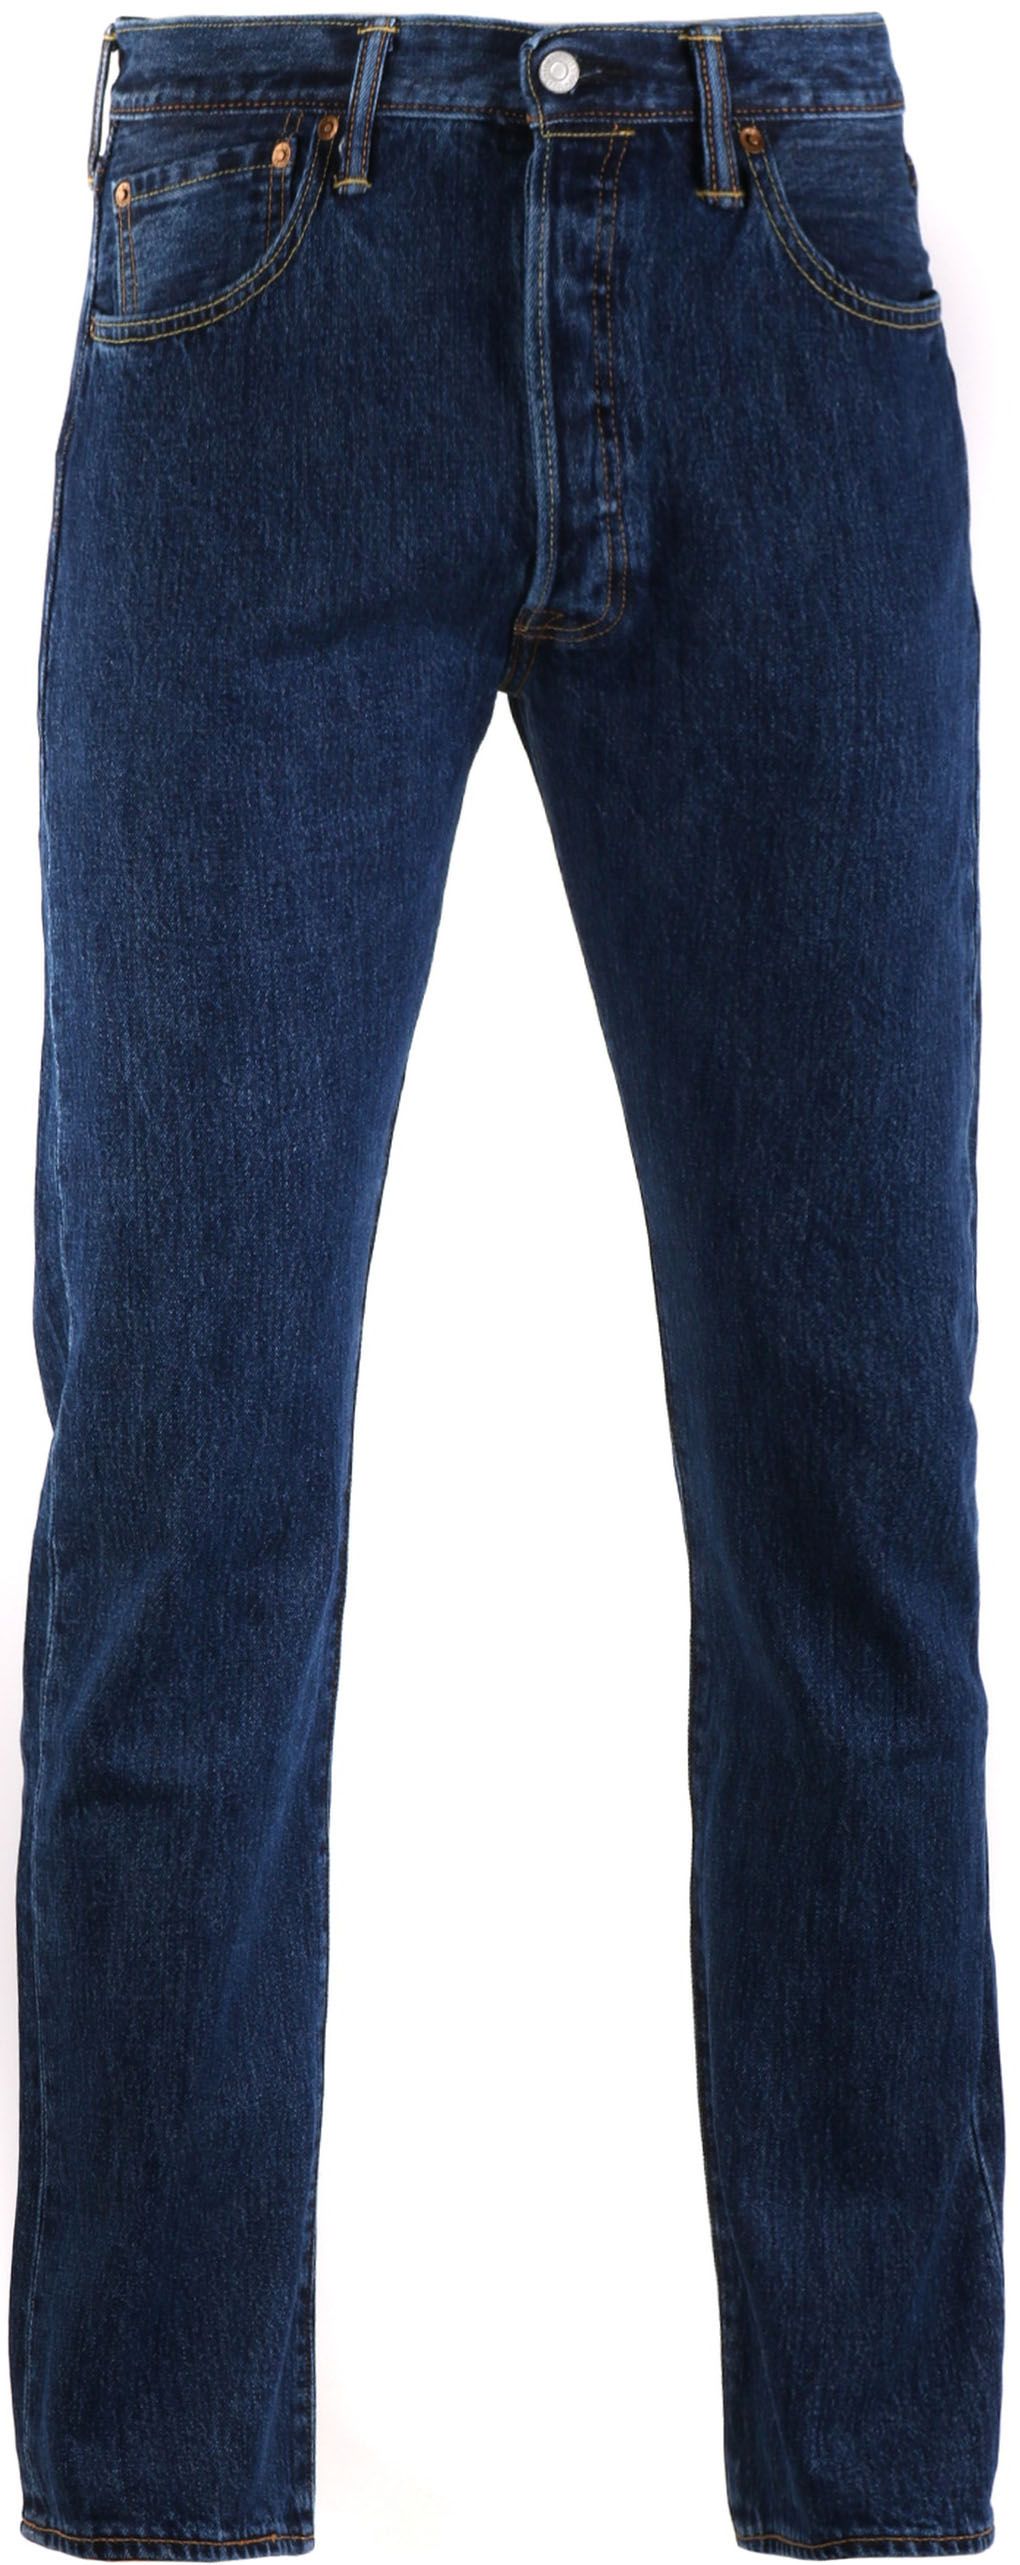 Levi's 501 Jeans Original Fit 0114 Blue size W 34